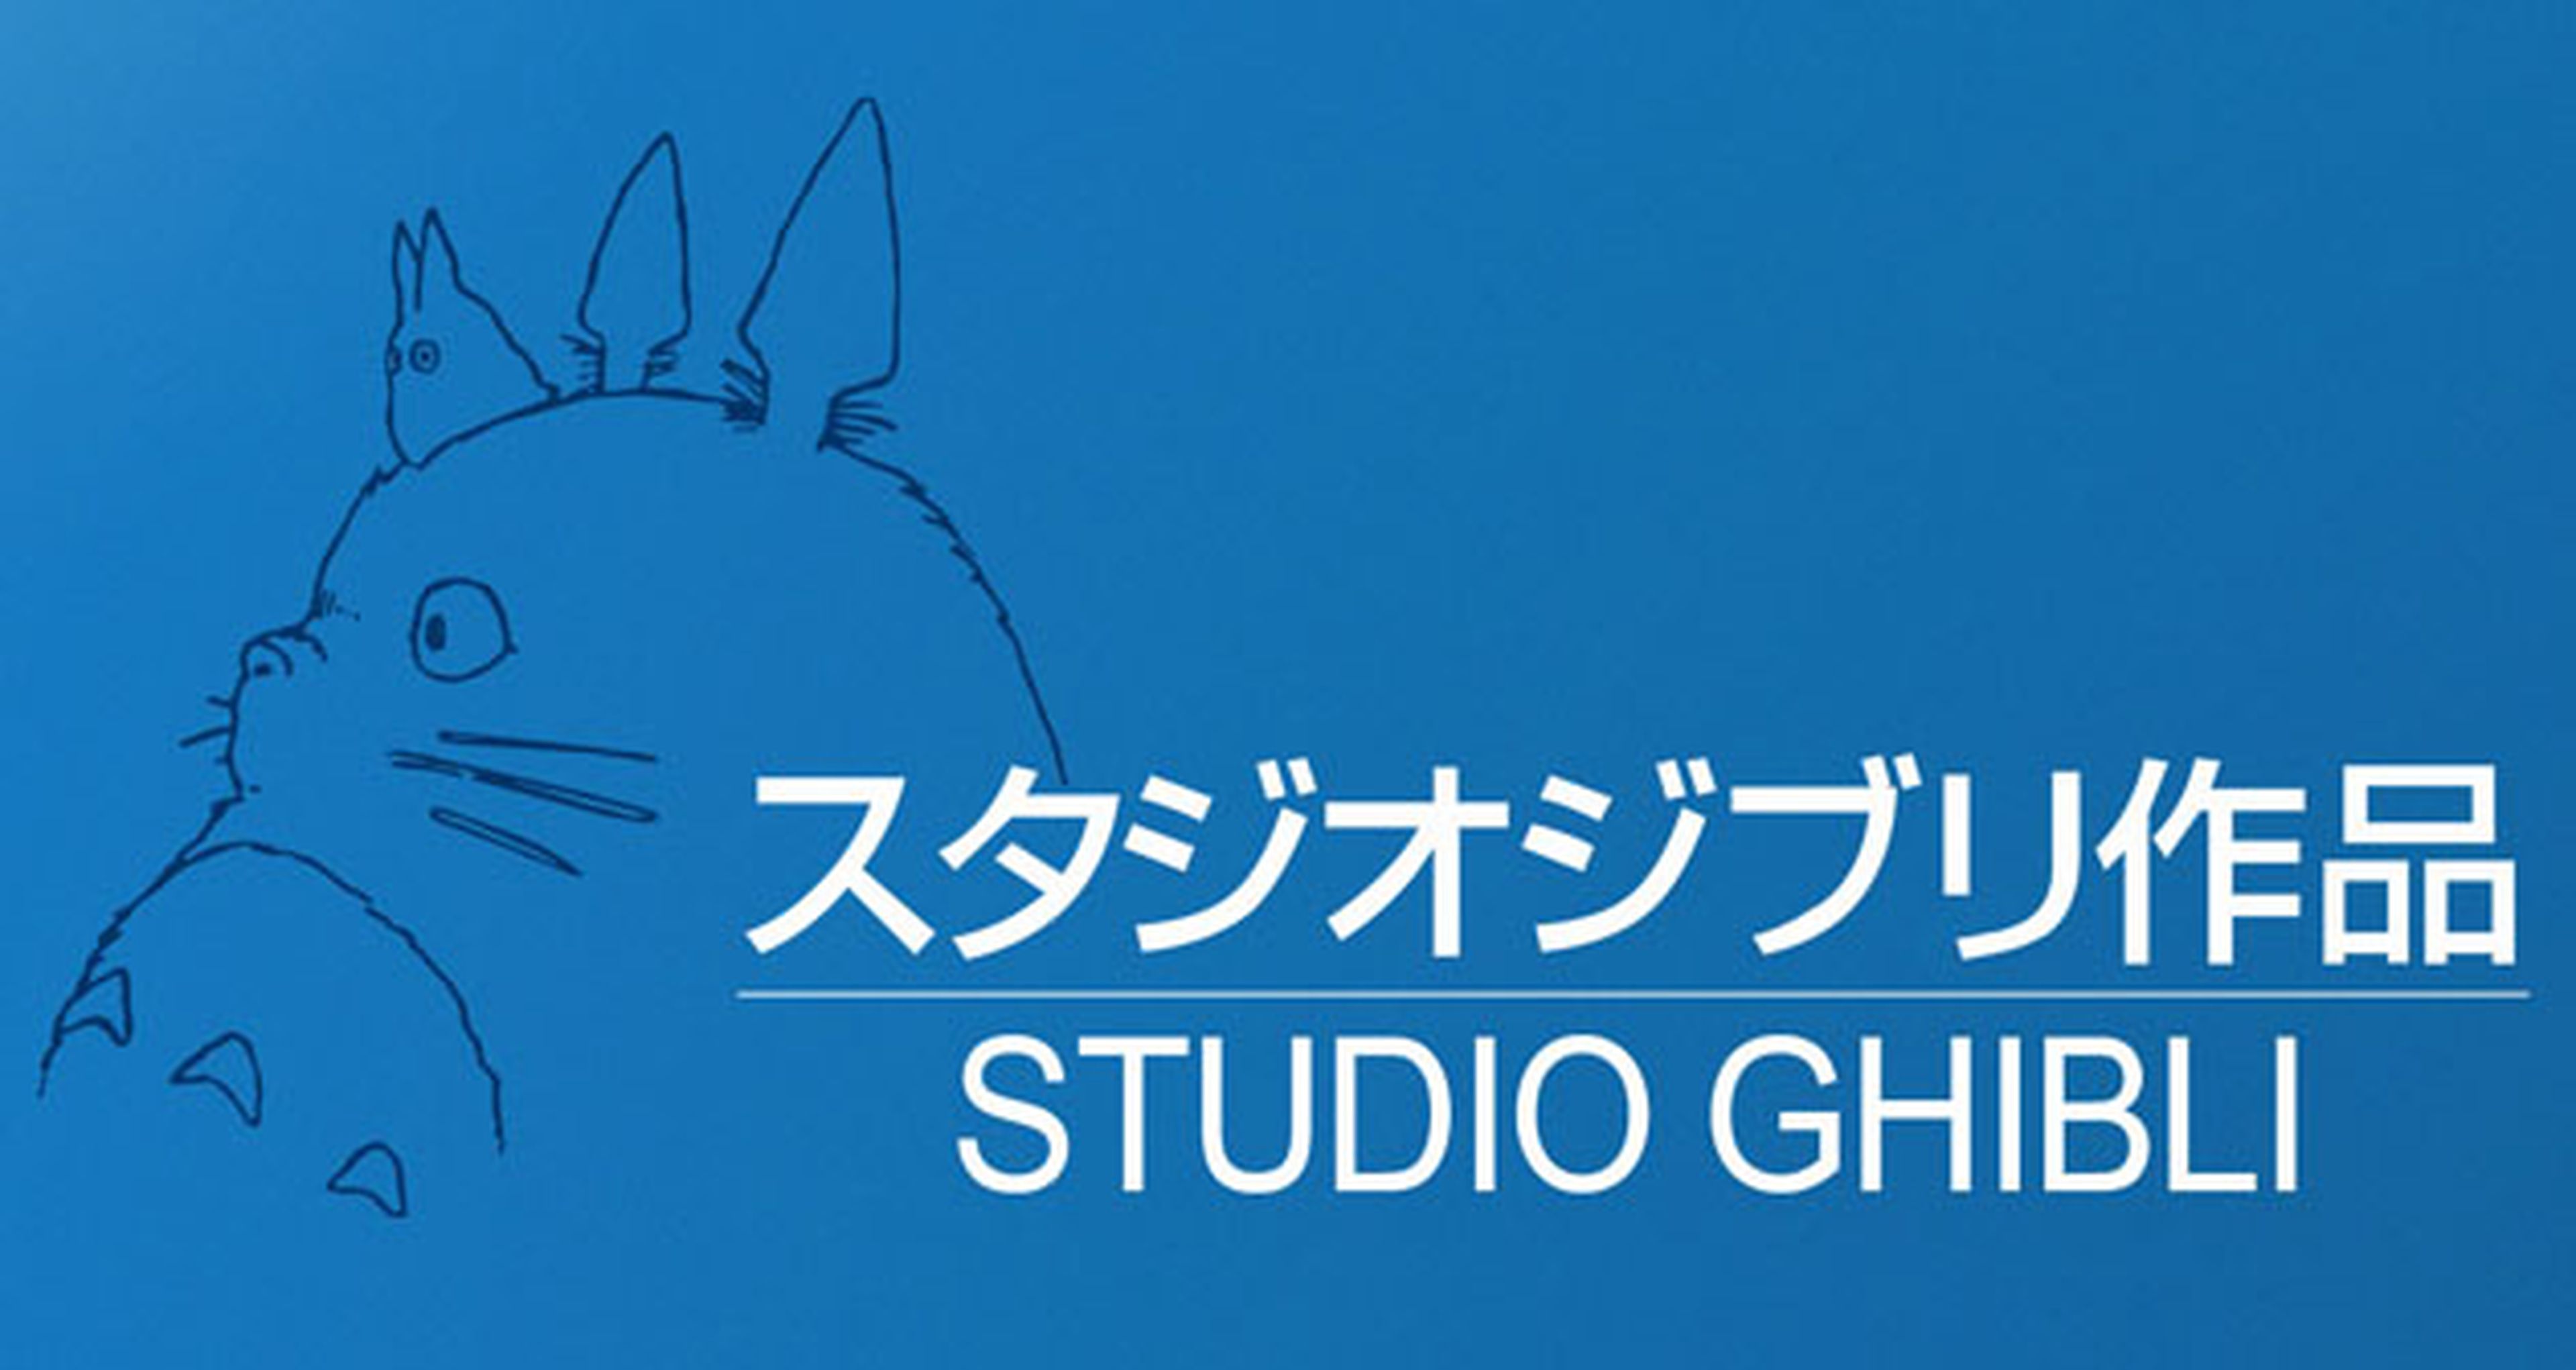 Dos películas de Studio Ghibli en 2013